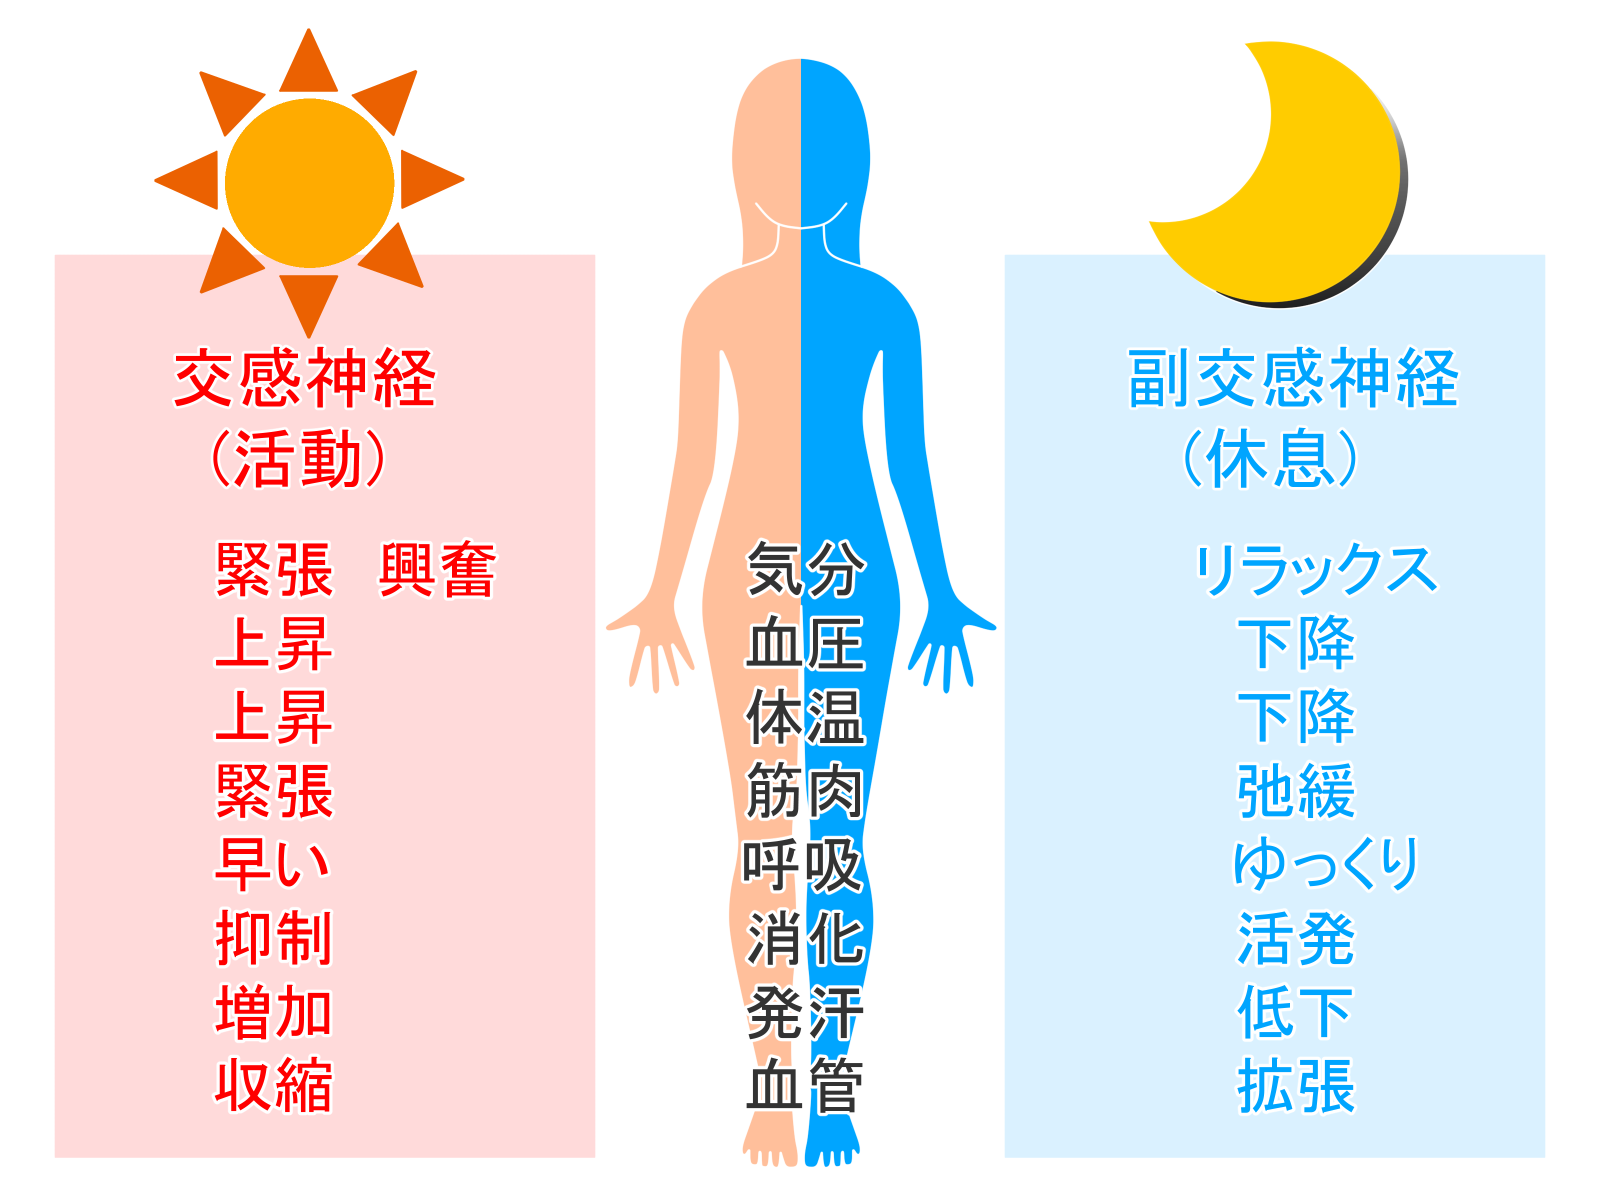 自律神経は、循環器、消化器、呼吸器、体温の調整、胃腸の働きやホルモン分泌の調整をするために、24時間働き続けています。